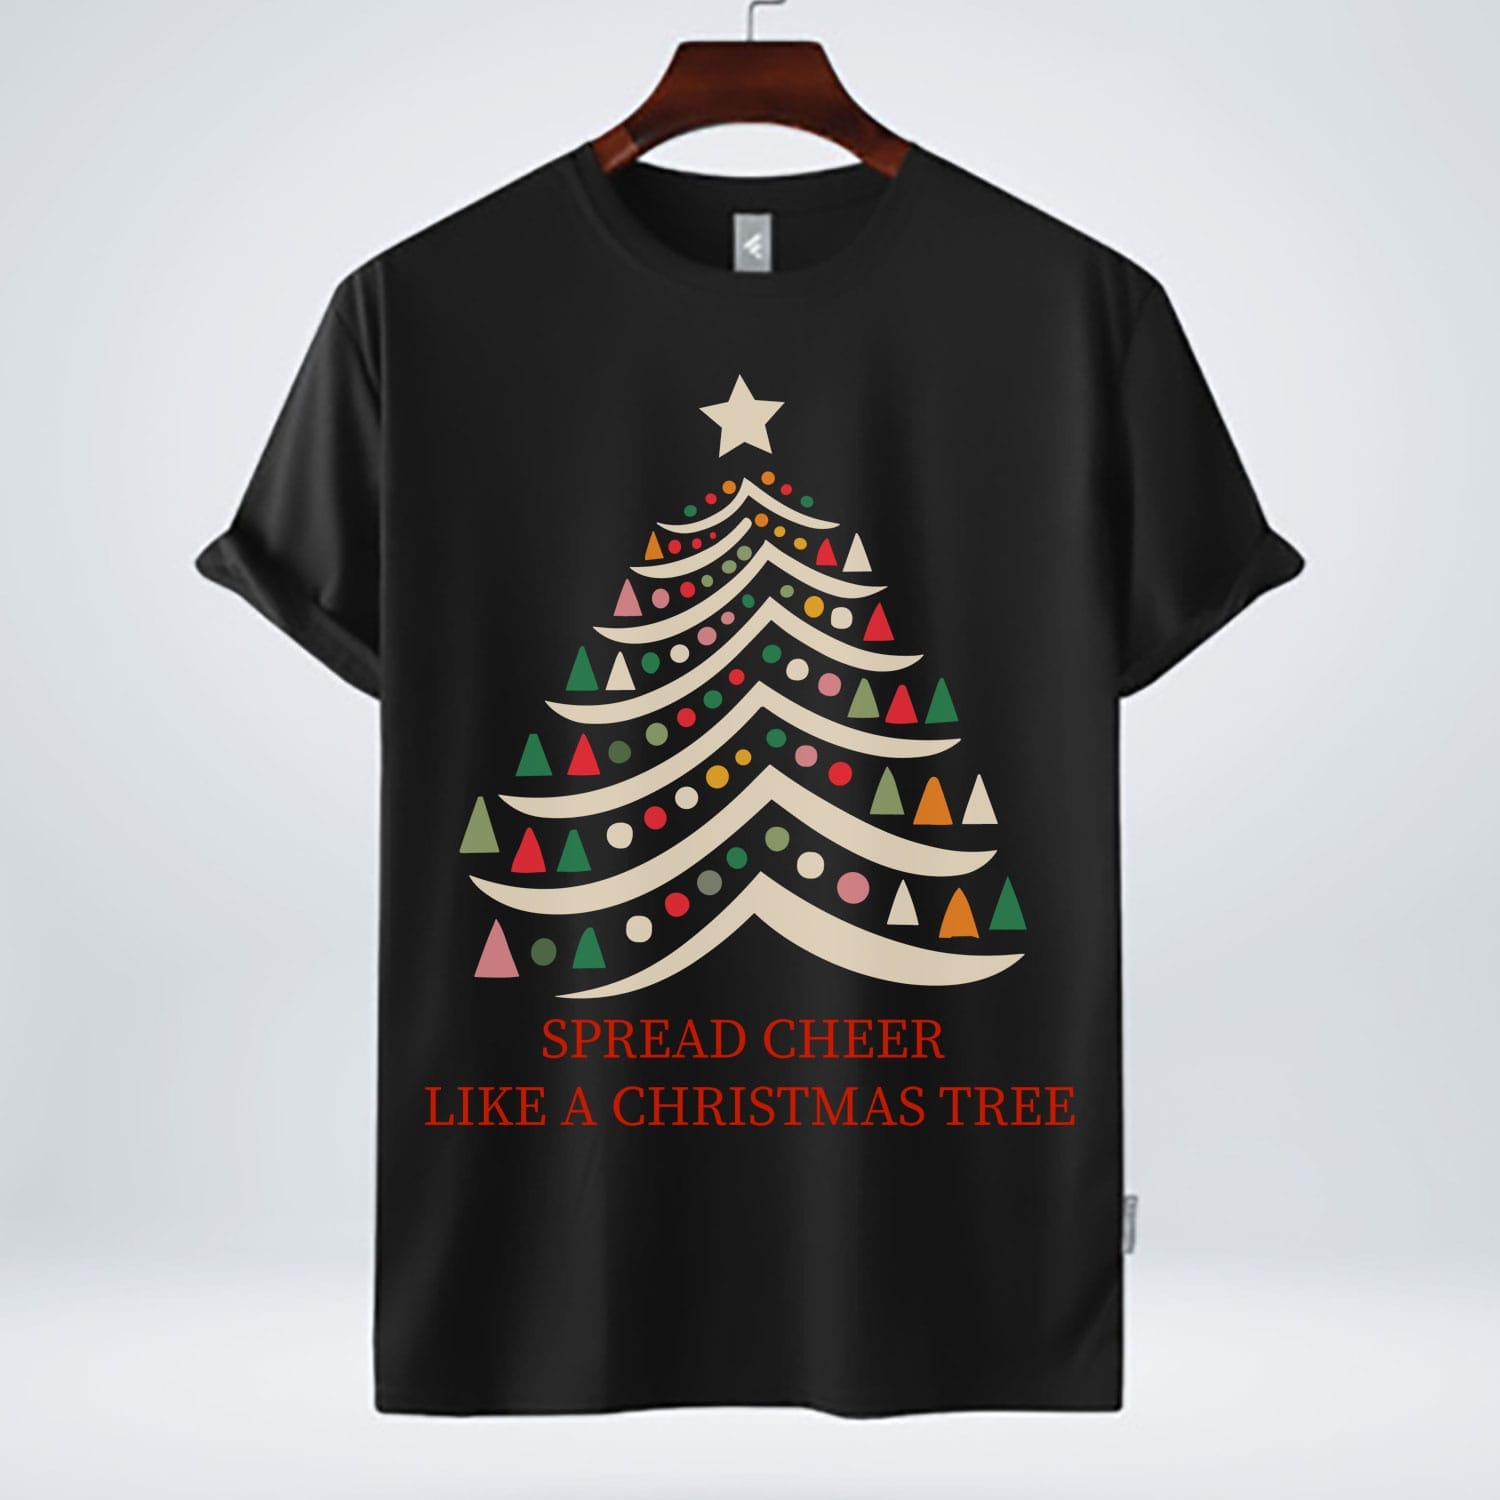 spread cheer like a Christmas tree free tshirt design